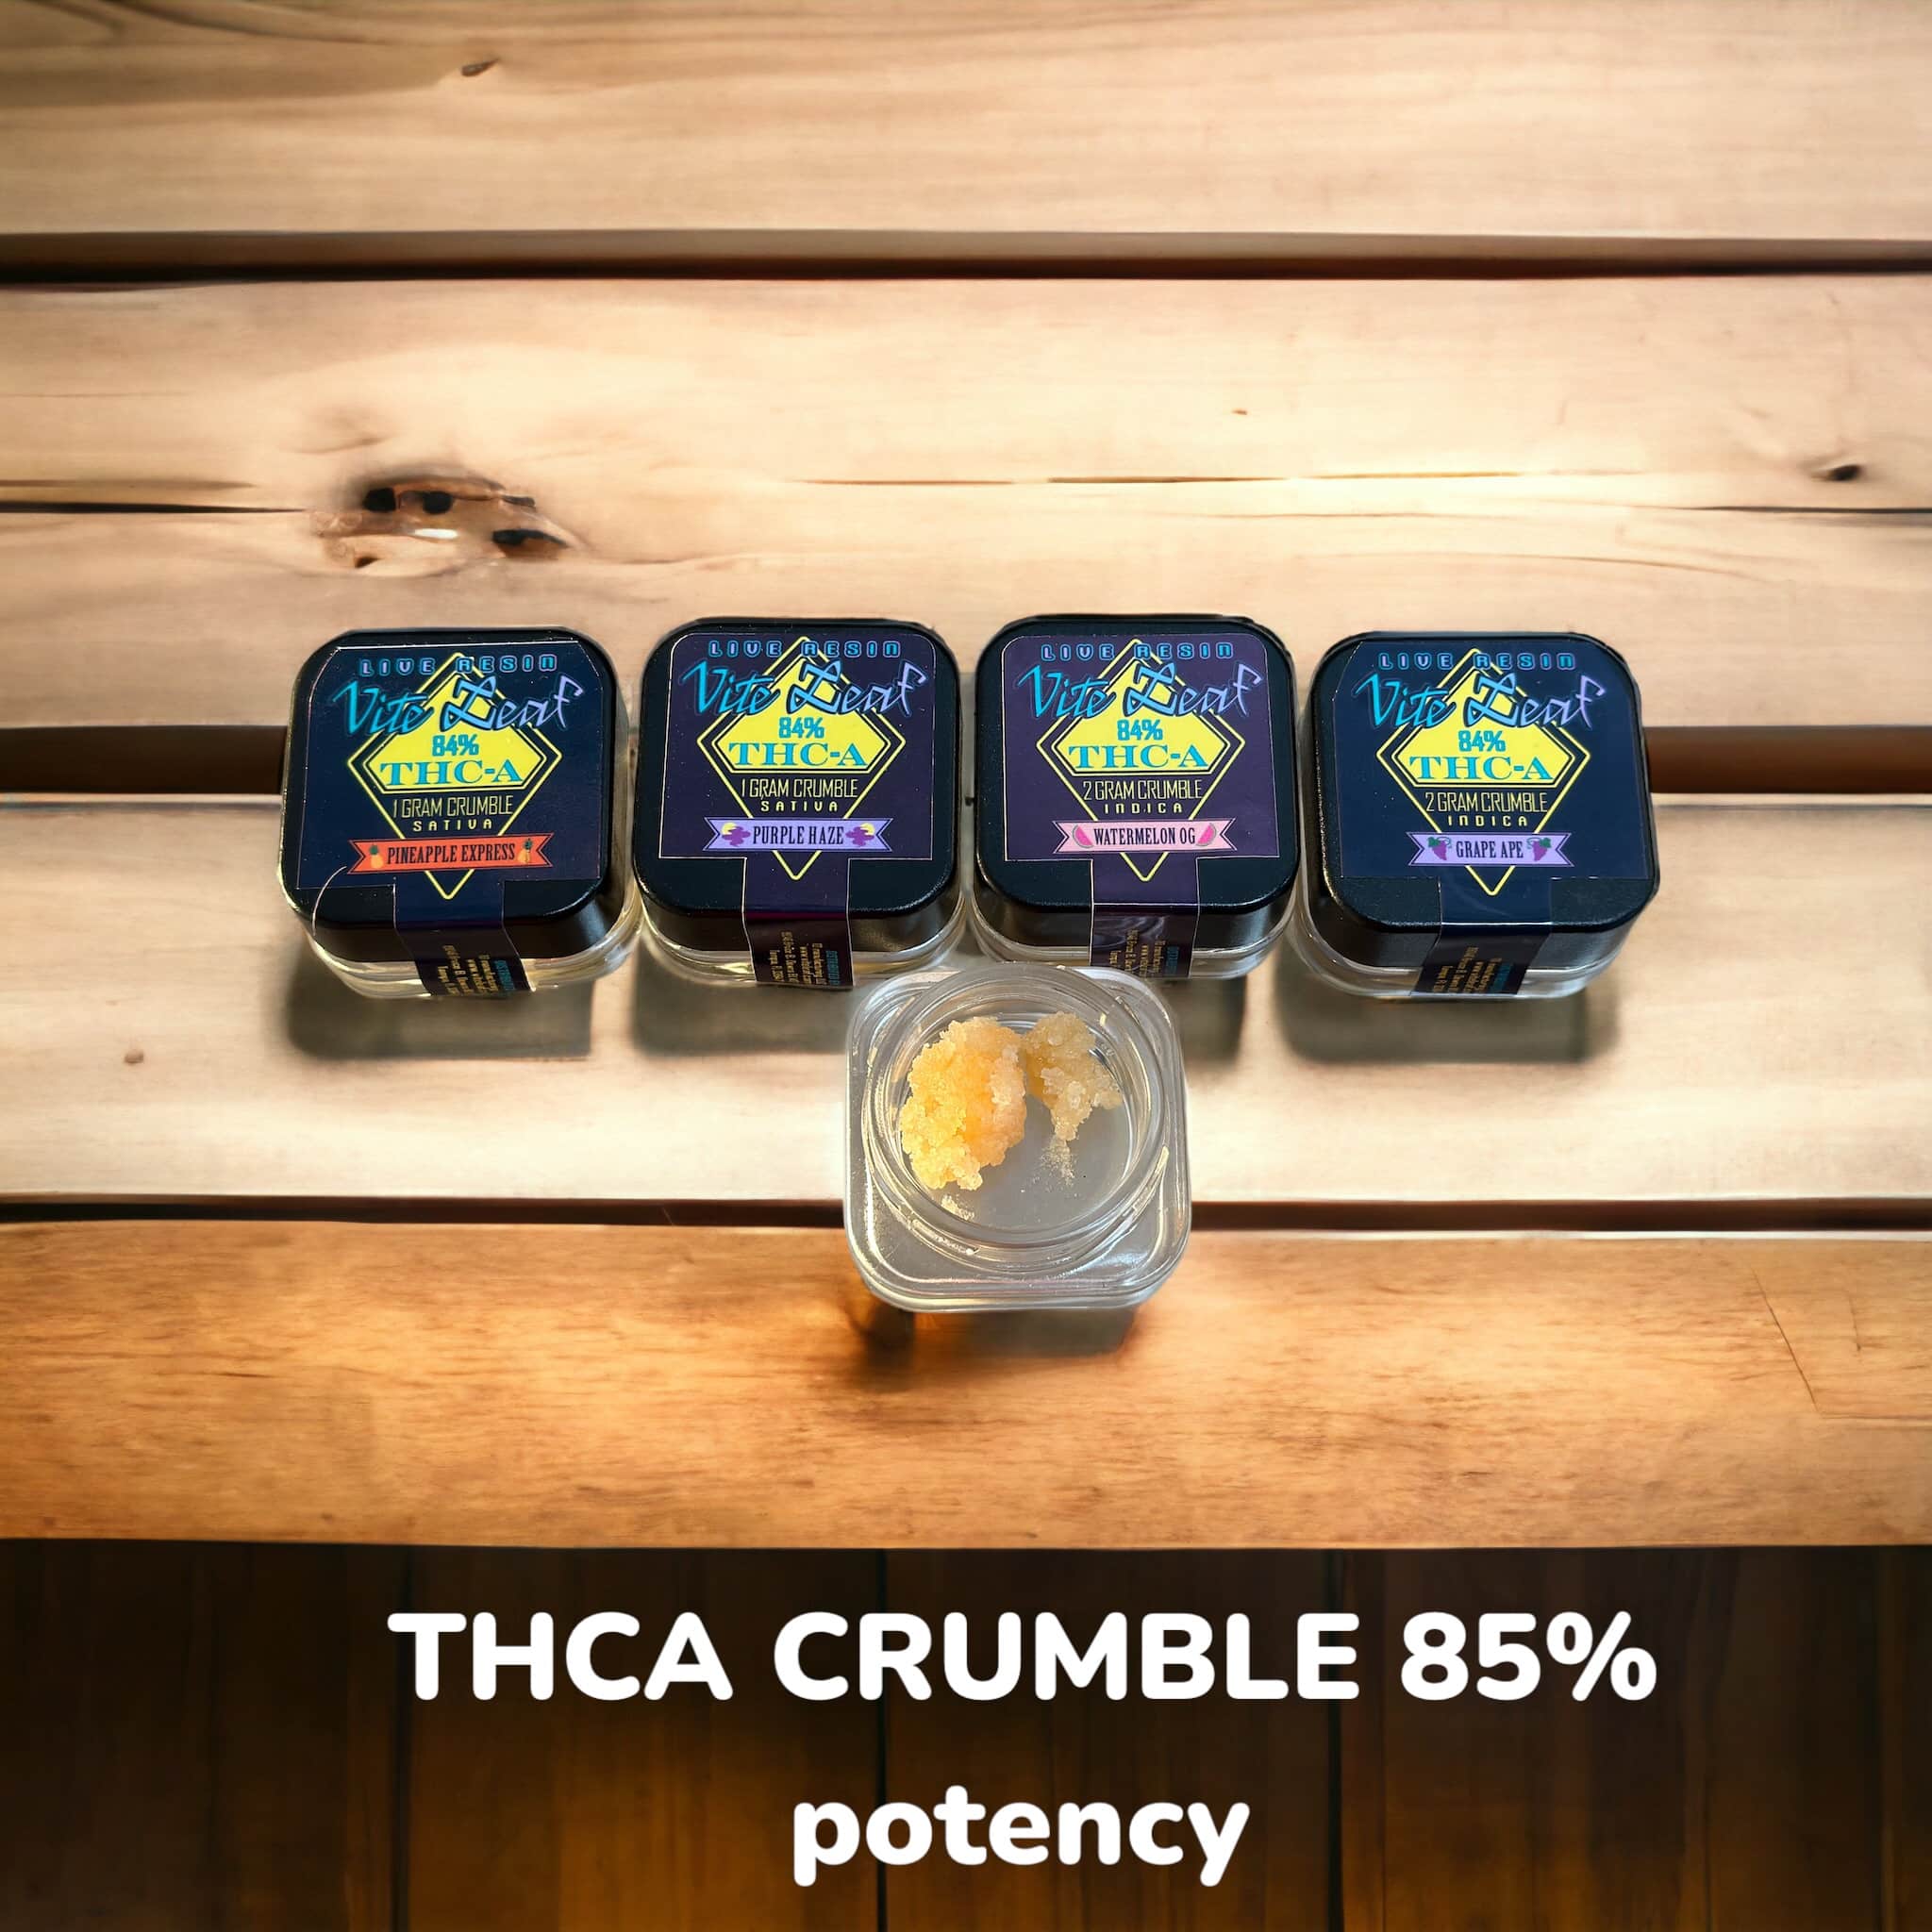 THCA crumble